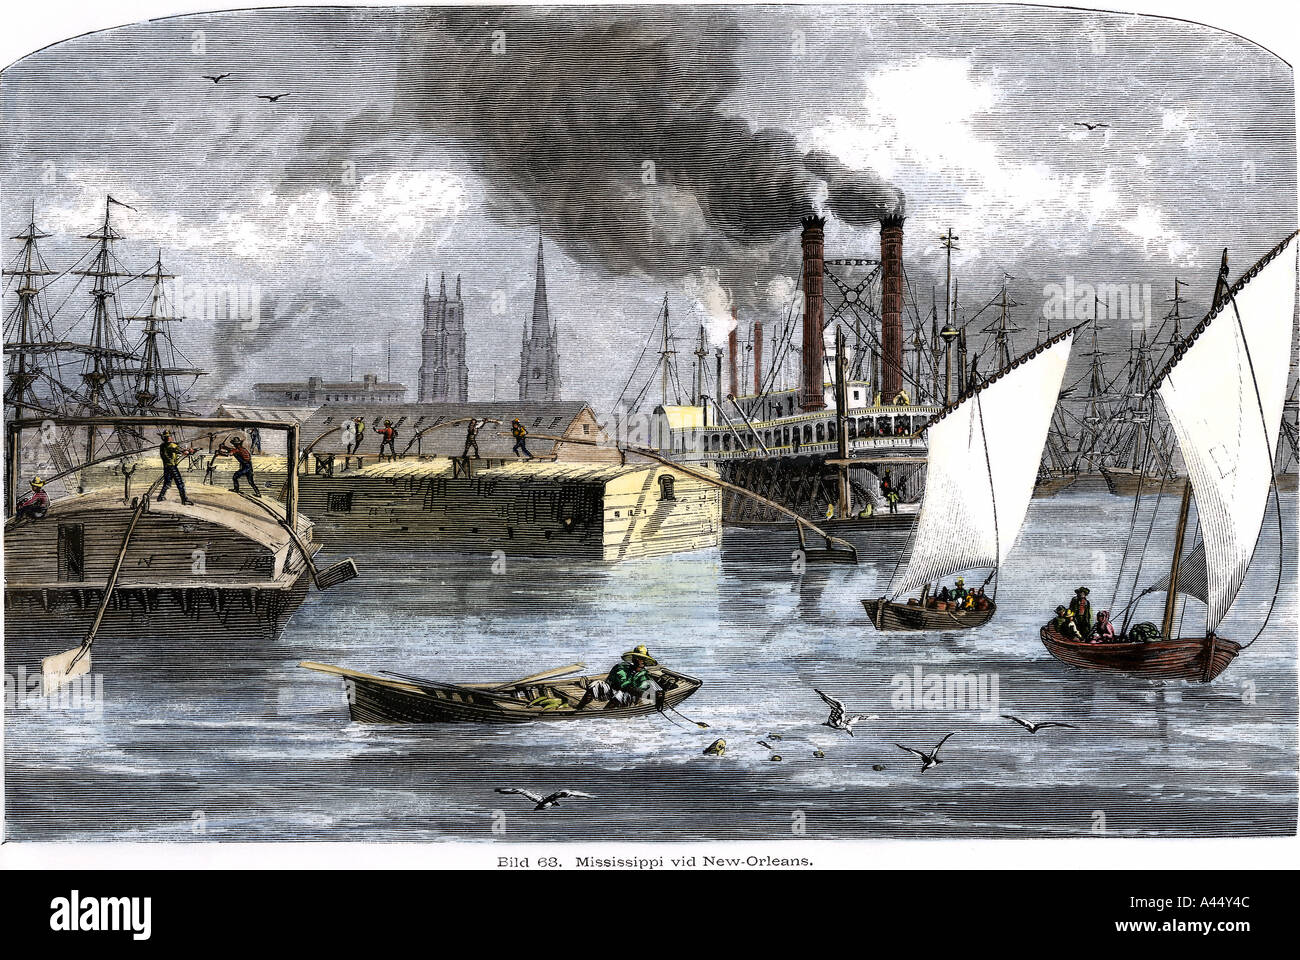 Le trafic fluvial sur le fleuve Mississippi à la Nouvelle Orléans vers 1880. À la main, gravure sur bois Banque D'Images